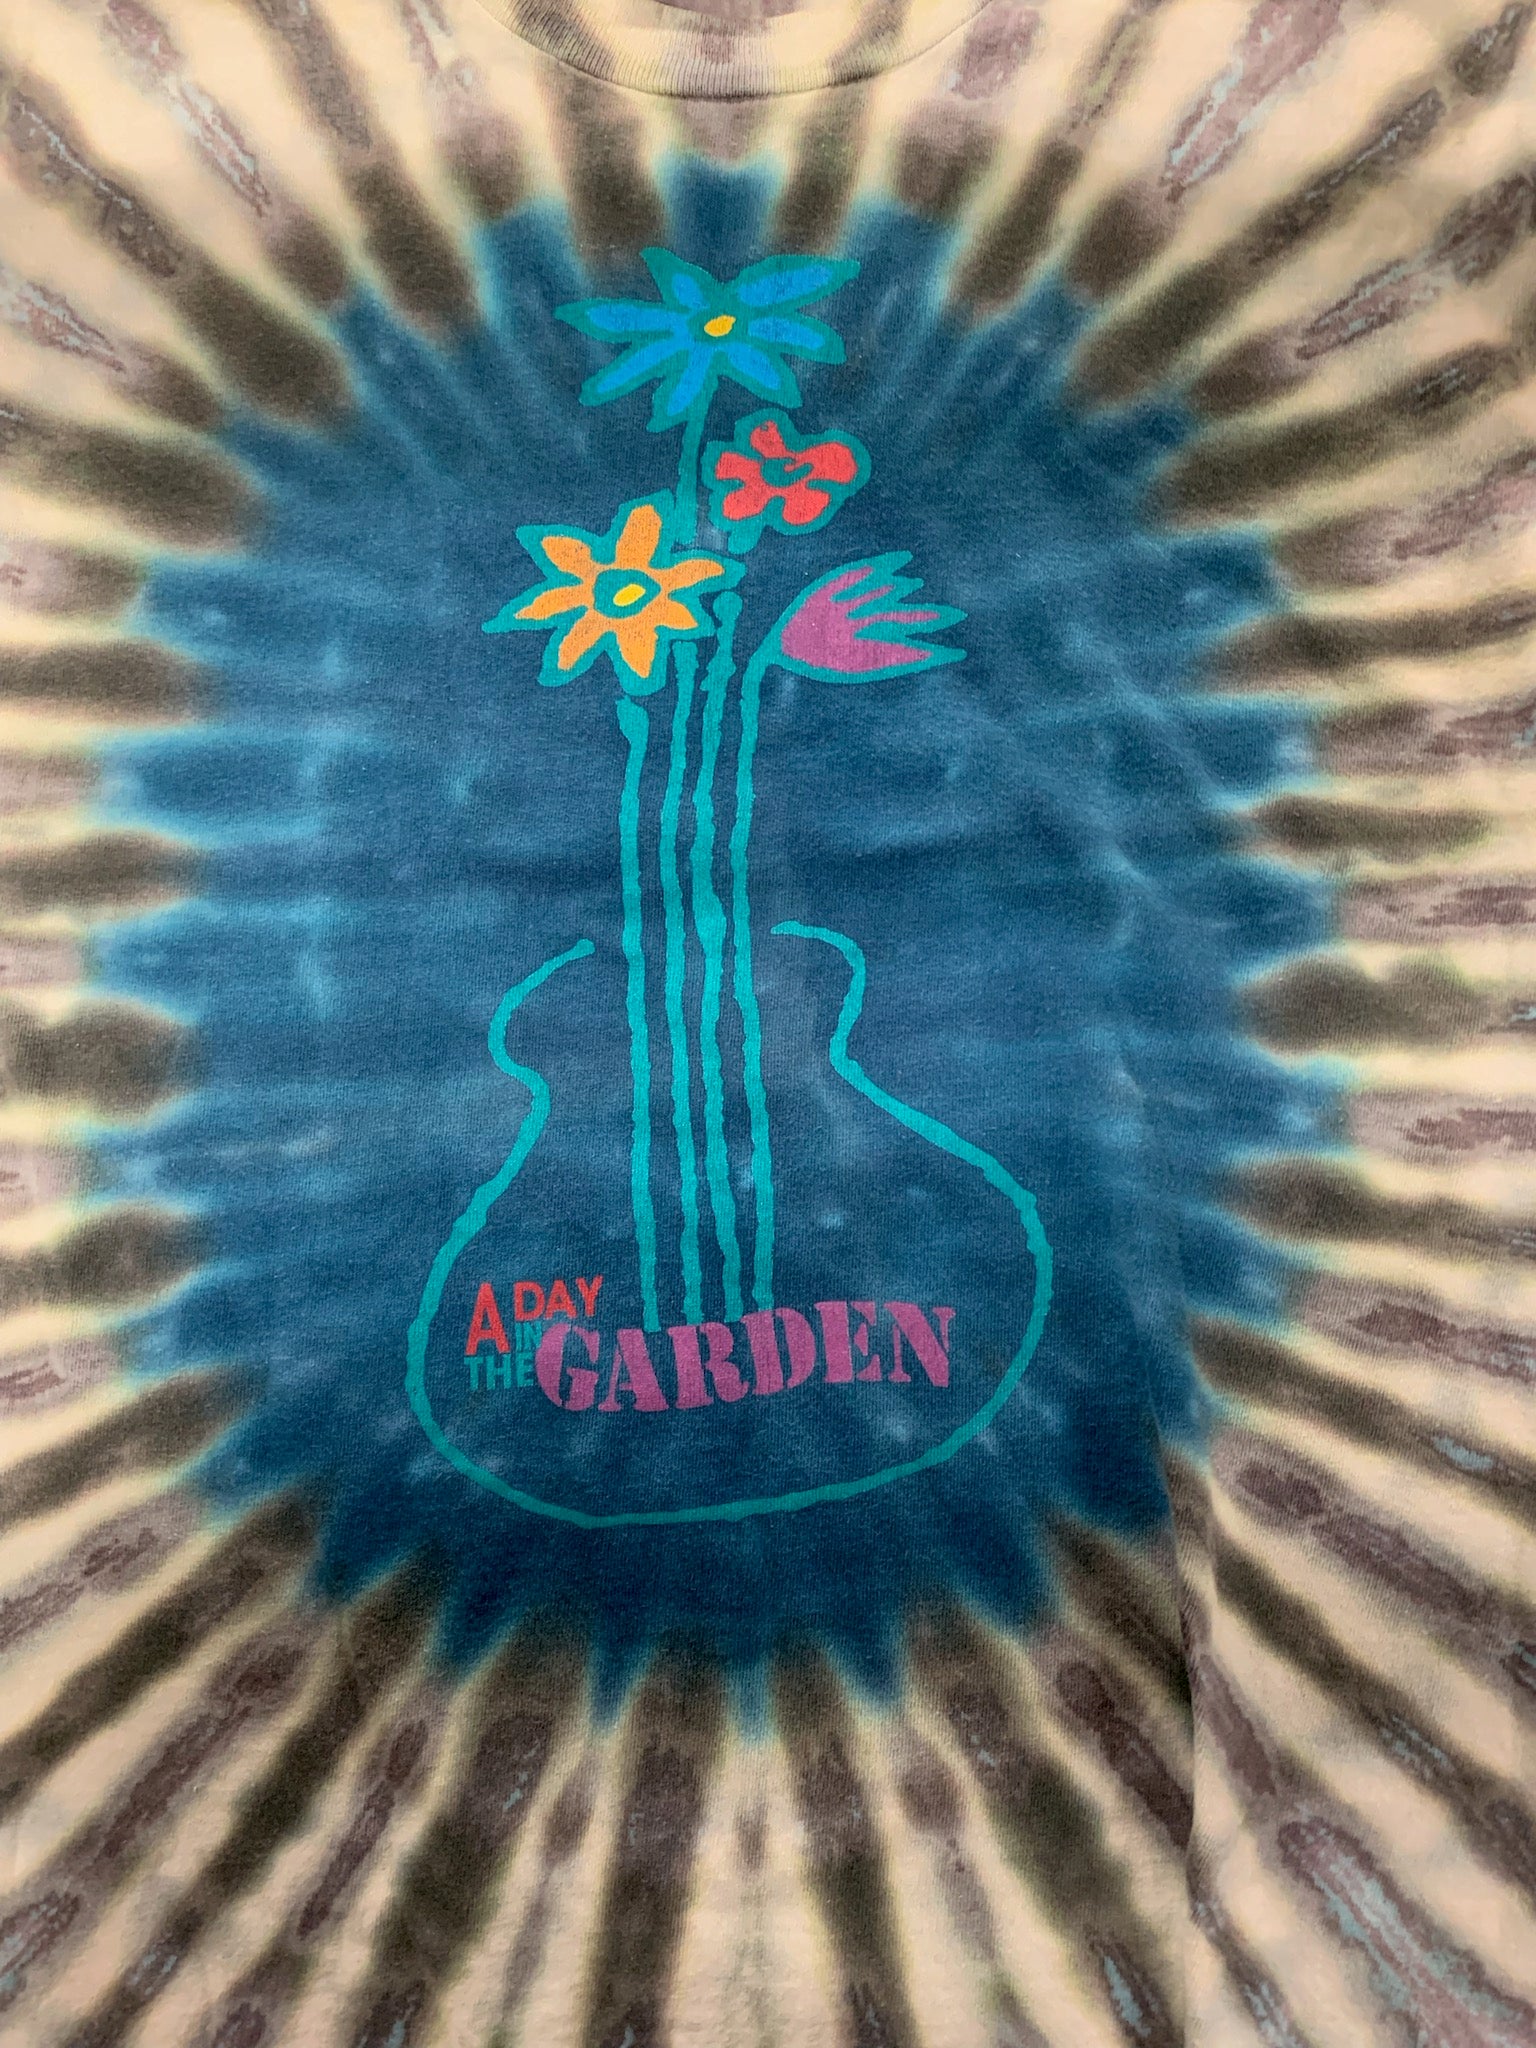 Day In The Garden 1998 Flower Guitar Shirt, Tie Dye, M